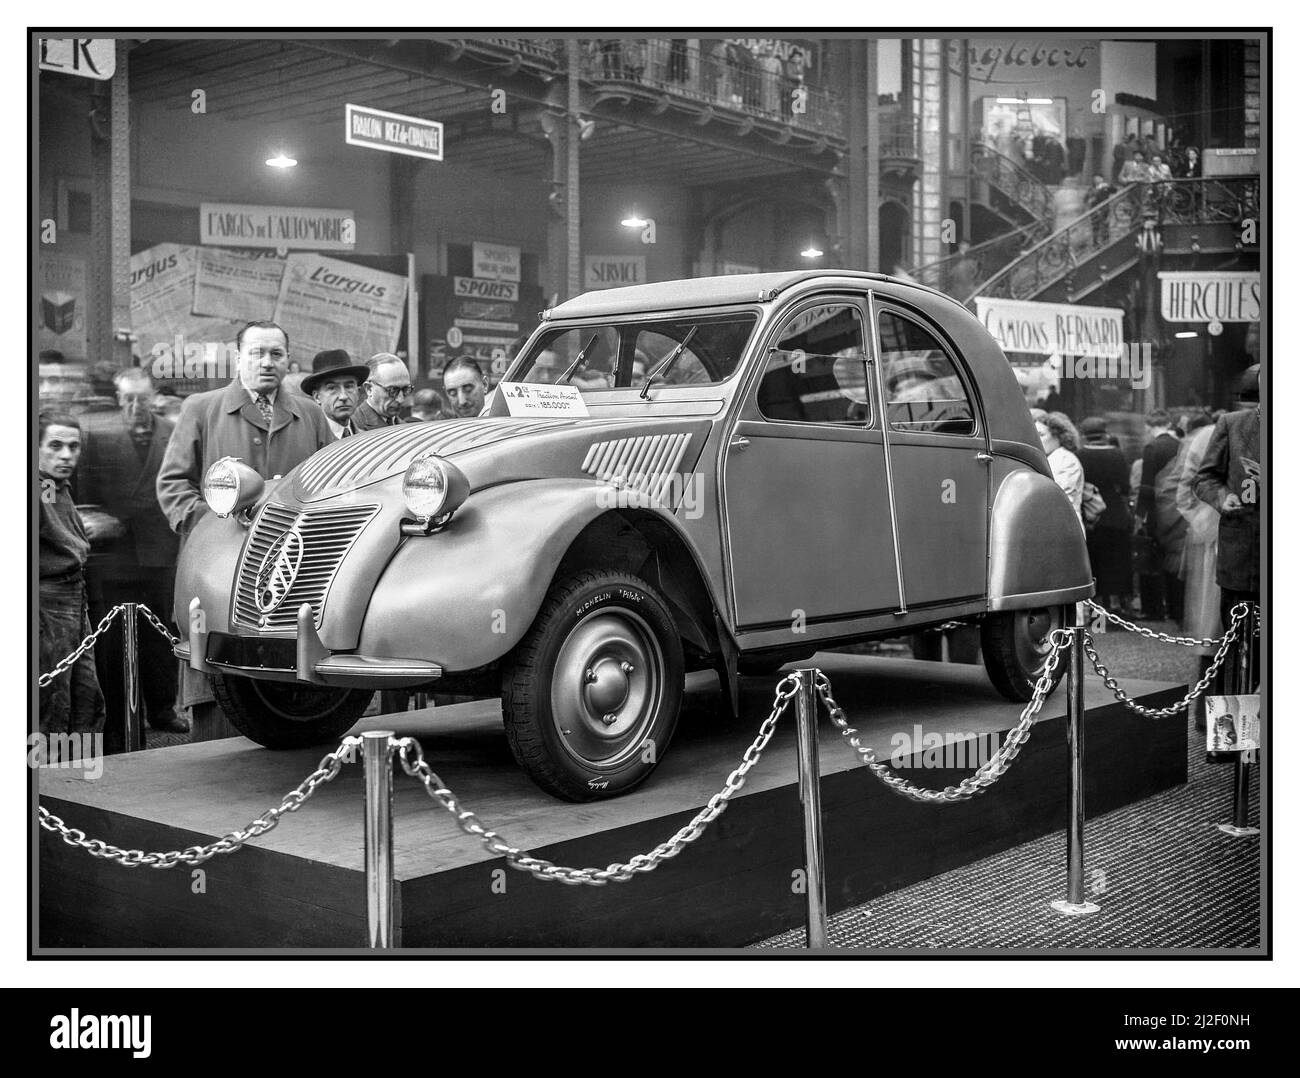 1949 Citroen 2CV lanciato al Salone di Parigi France Motor Show a 185.000 FFR con pneumatici Michelin Pilote. Nel dopoguerra il lancio francese della rivoluzionaria Citroen Traction Avant deux chevaux car, che ha successivamente raggiunto lo status iconico in tutto il mondo Foto Stock